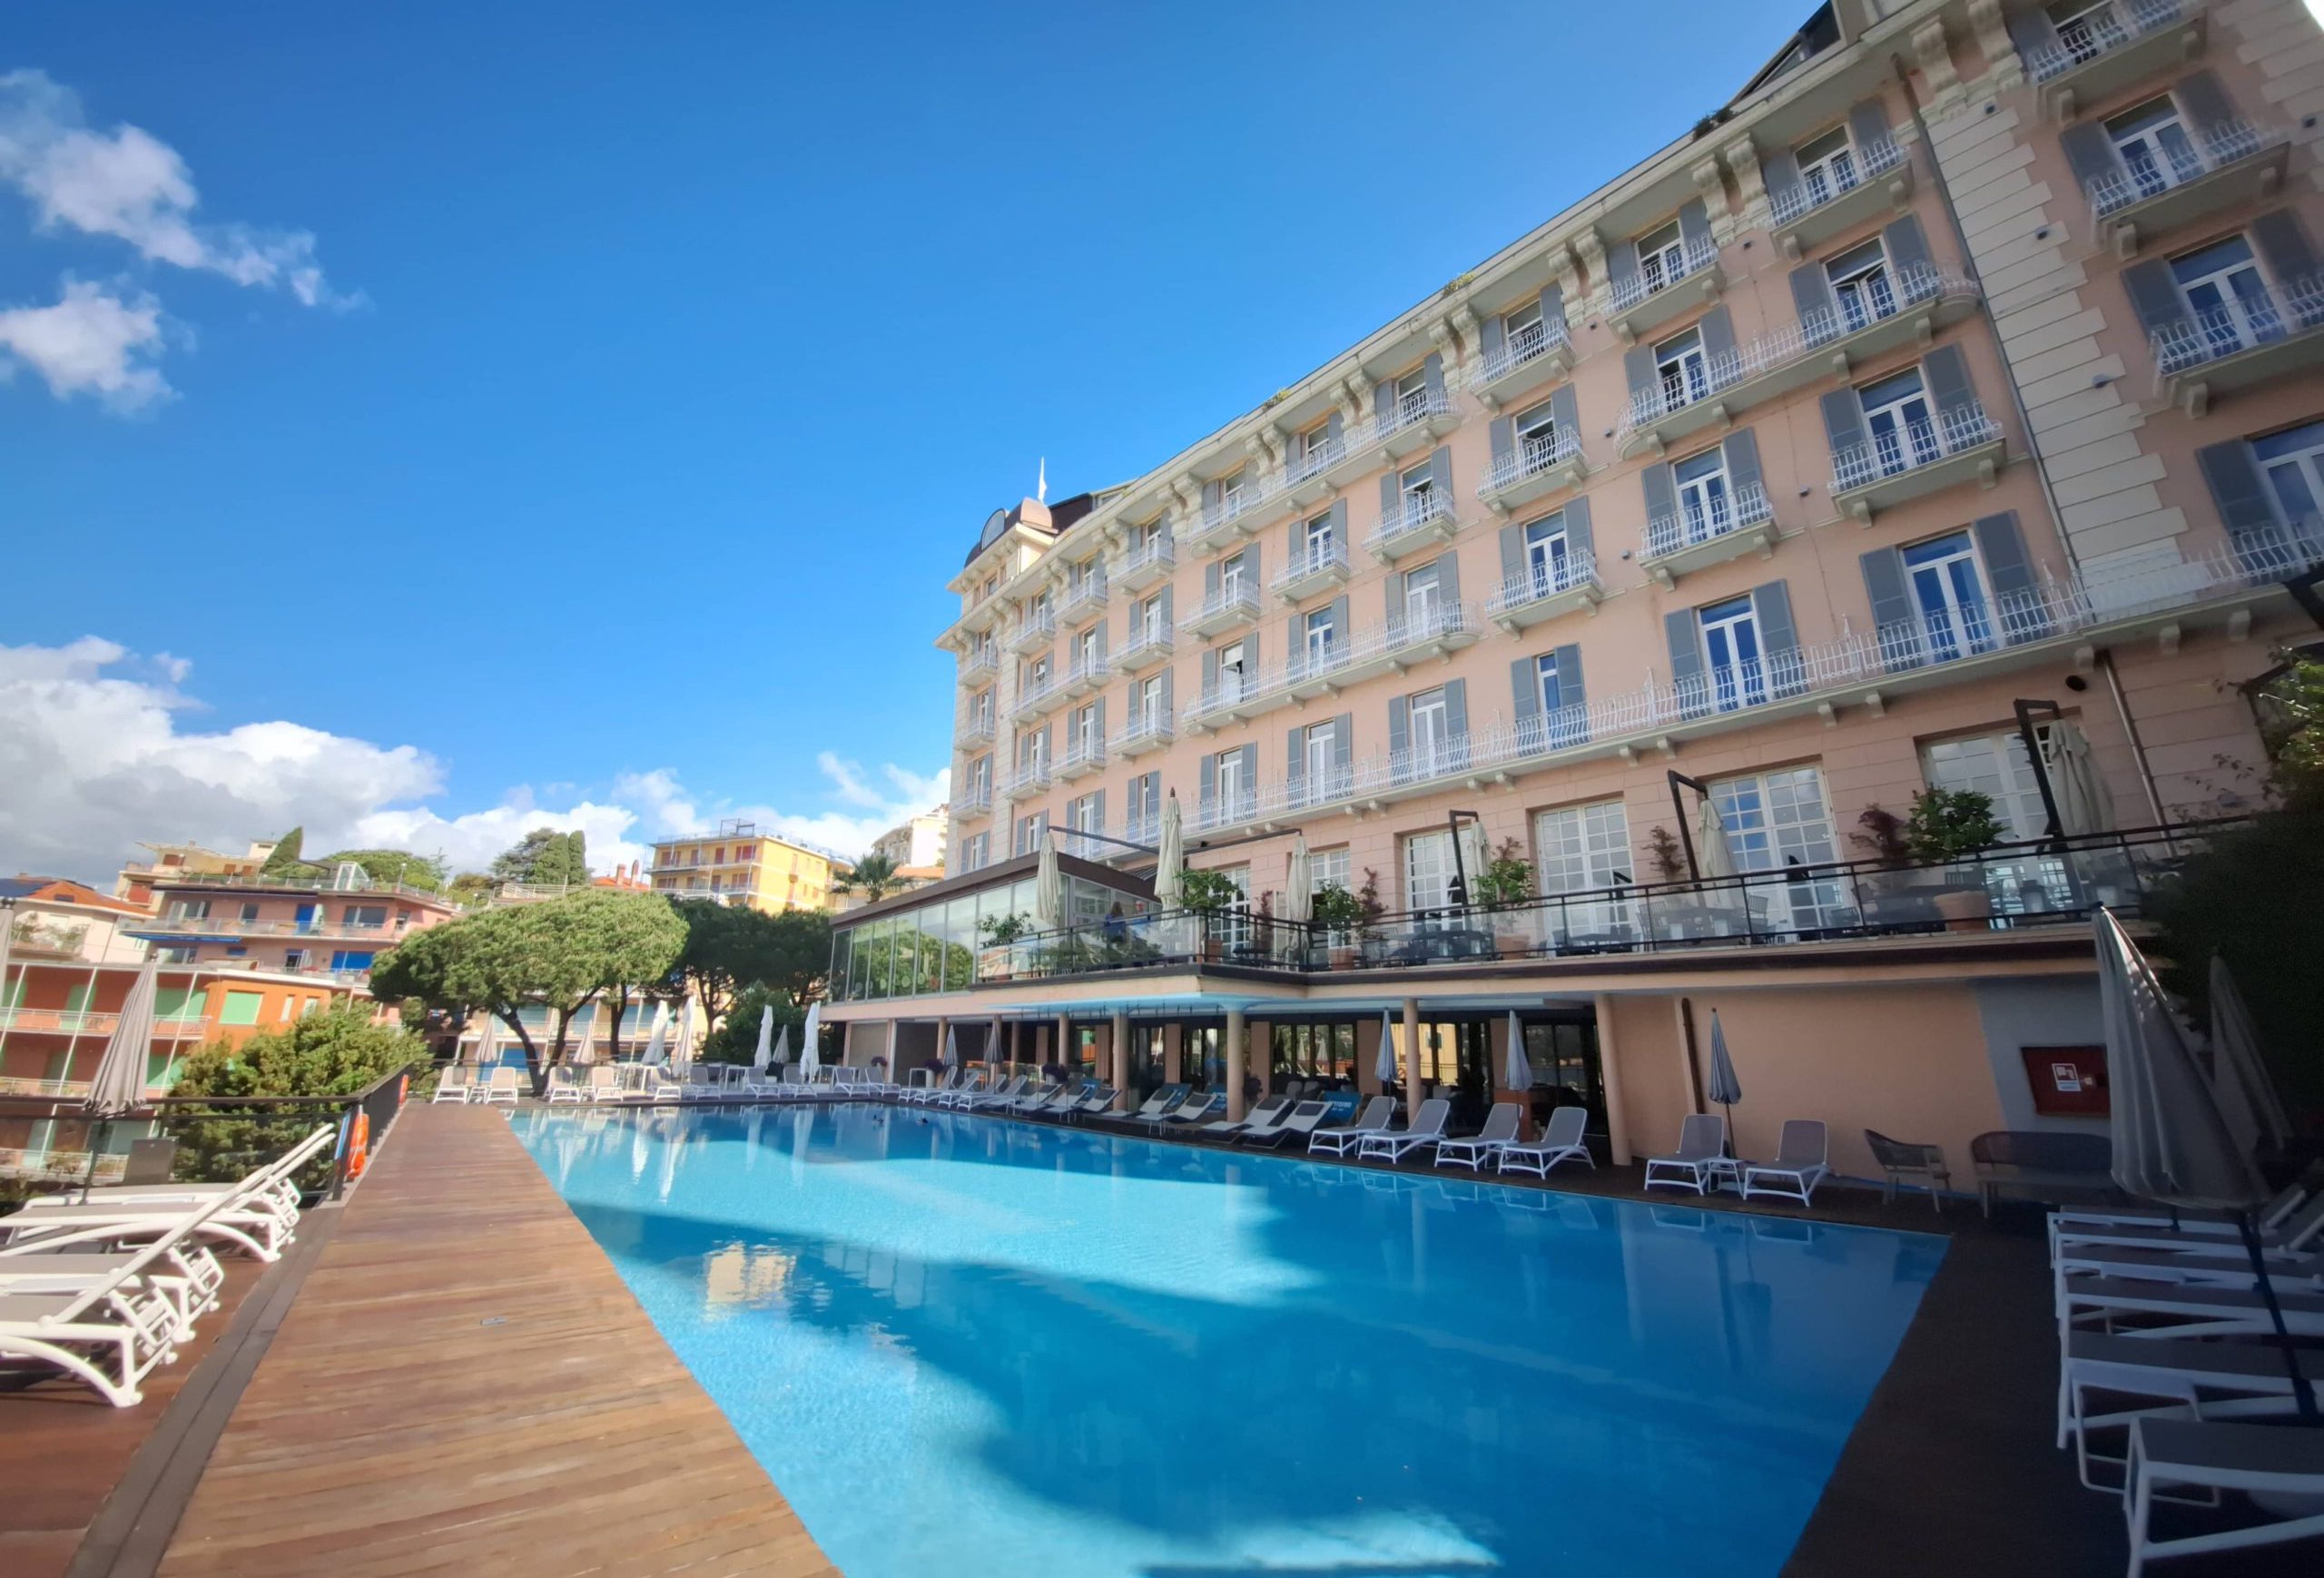 Grand Hotel Bristol Rapallo: viaggio nella Dolce vita della Riviera Ligure